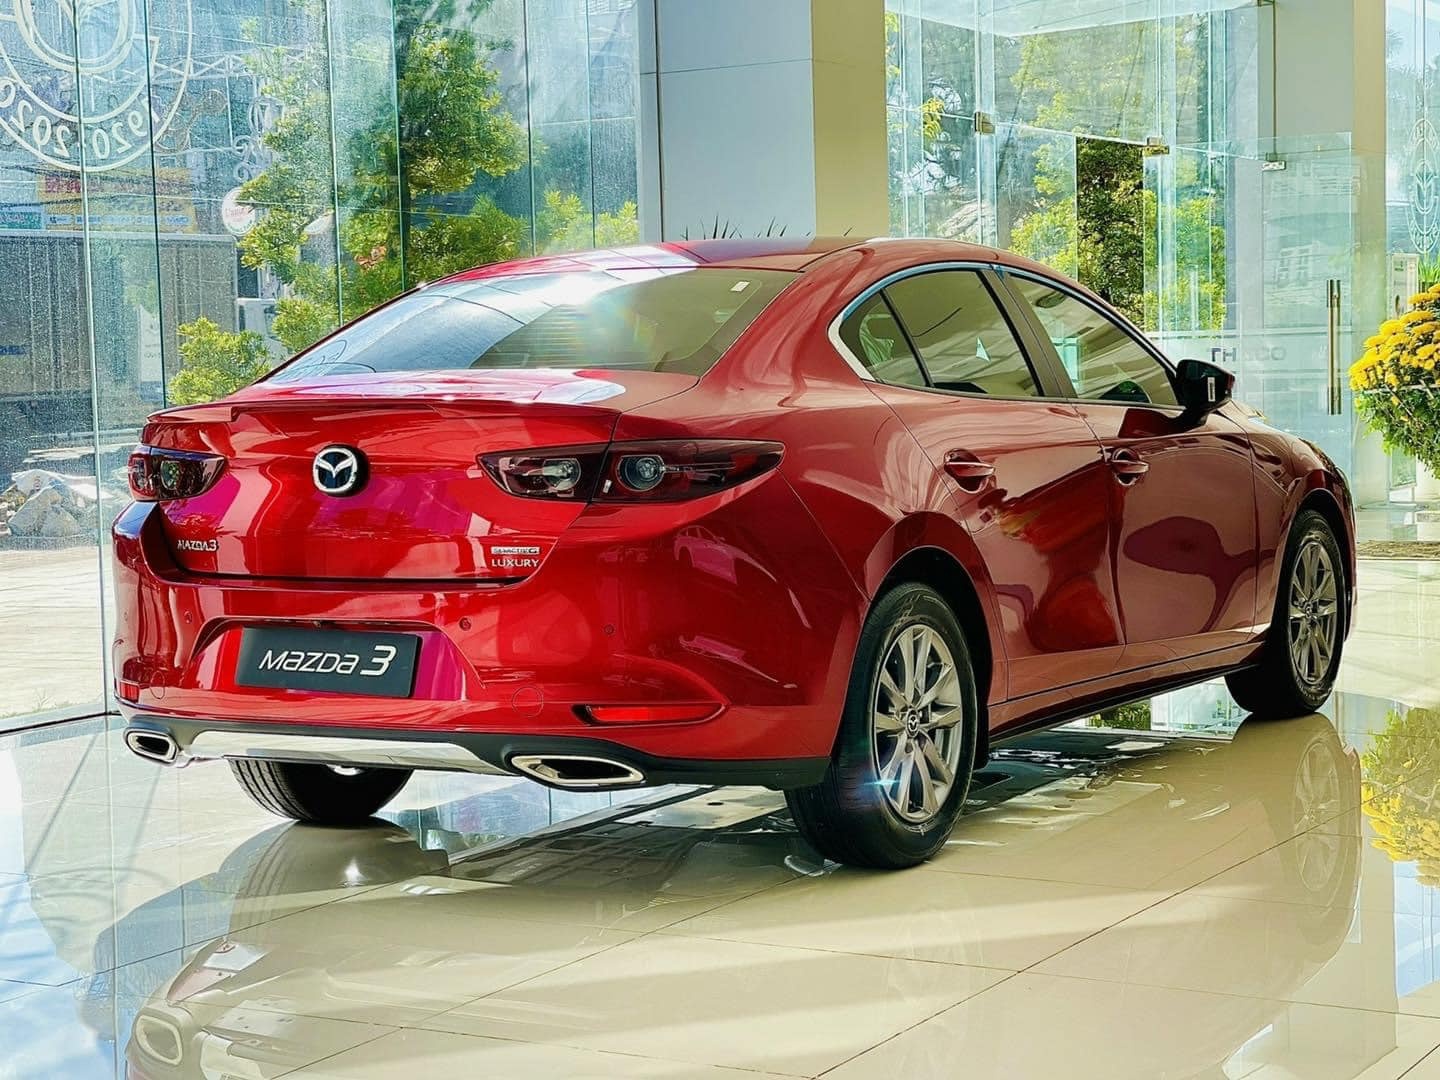 Khách Việt muốn sở hữu Mazda3 2.0 chỉ có thể tìm mua xe đã qua sử dụng